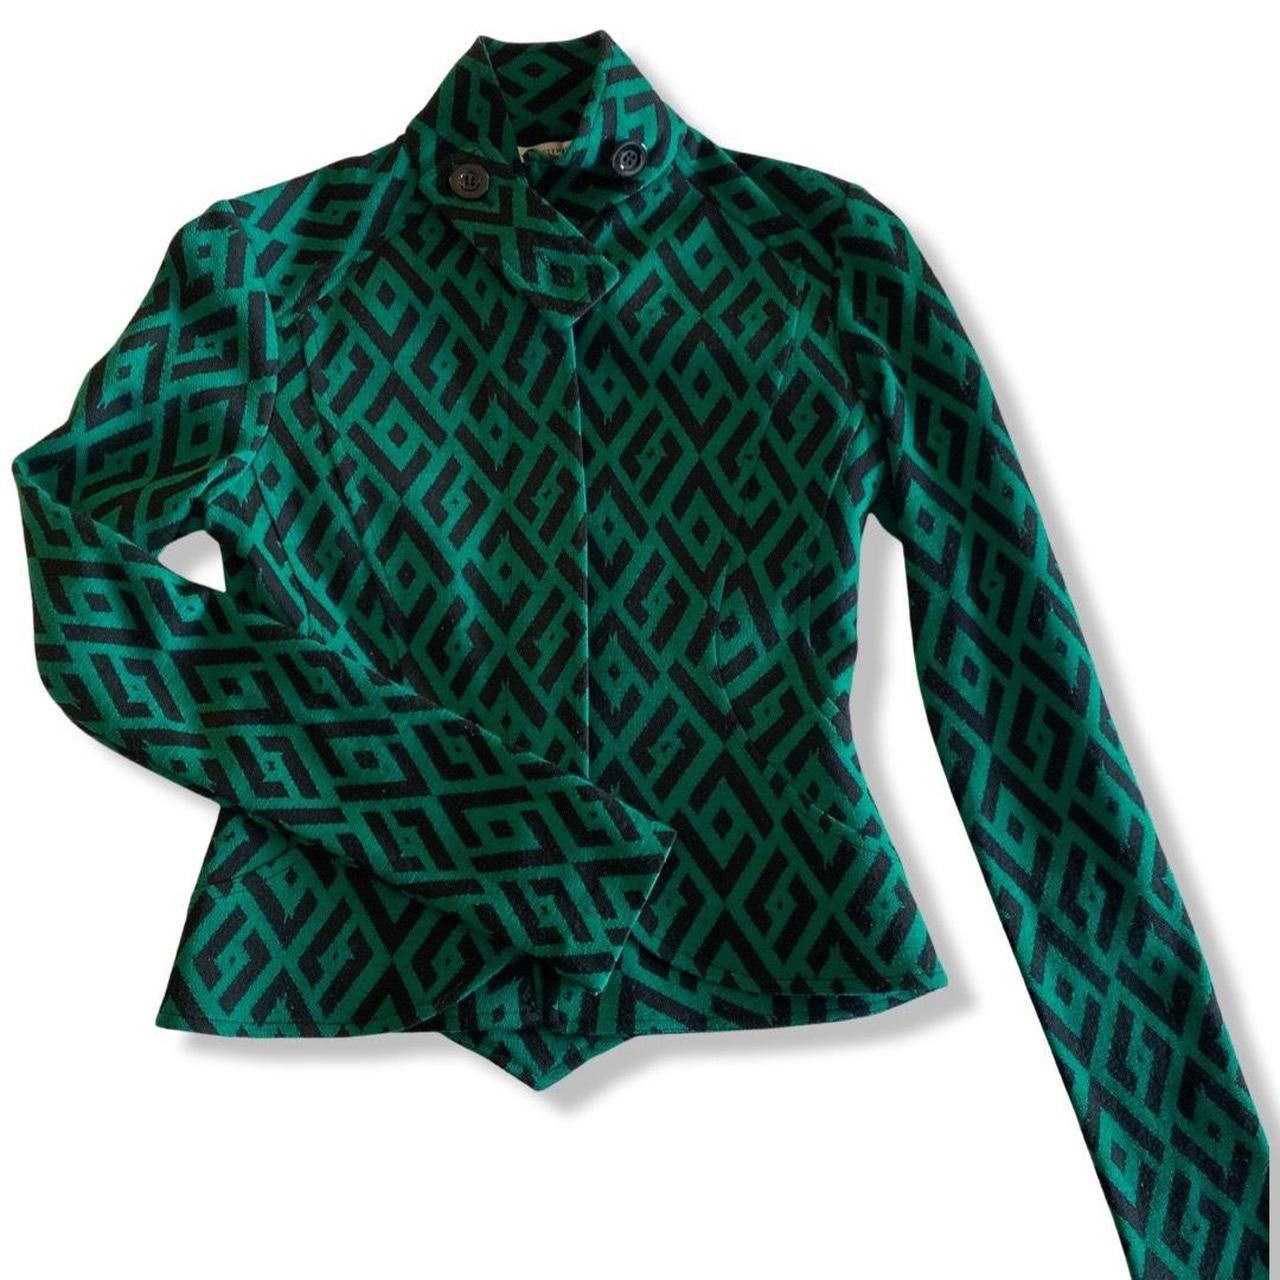 Diane von Furstenberg Women's Green and Black Jacket